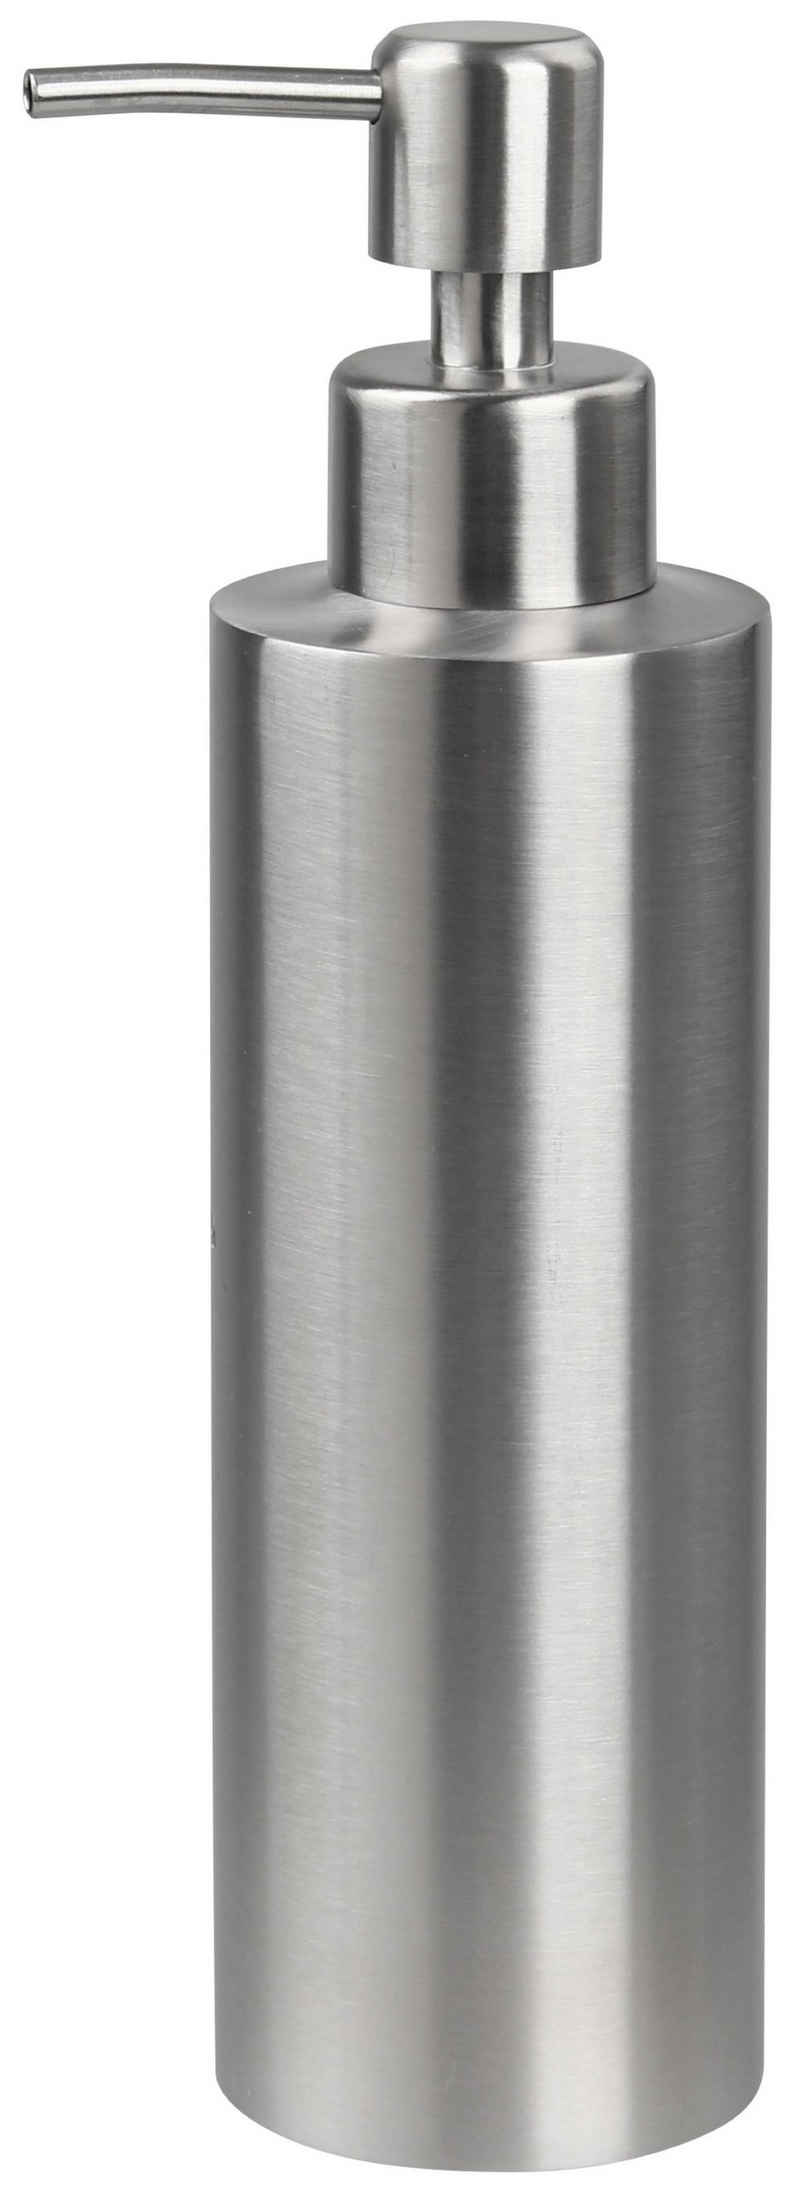 FACKELMANN Seifenspender Seifenspender aus Edelstahl Silber Matt – Fassungsvermögen von 350 ml